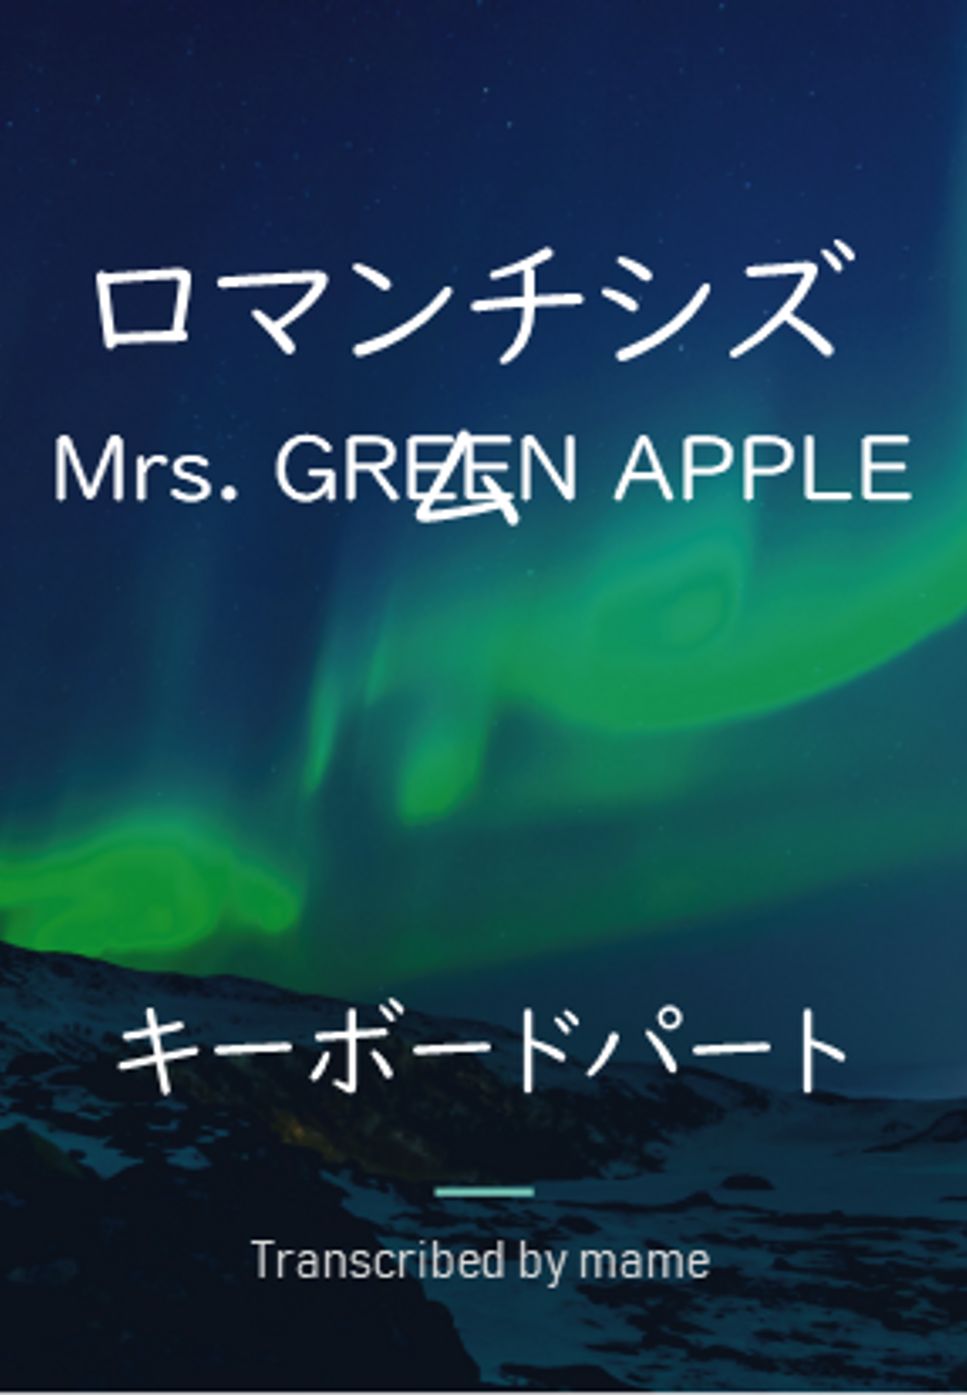 Mrs. GREEN APPLE - ロマンチシズム (キーボードパート) by mame